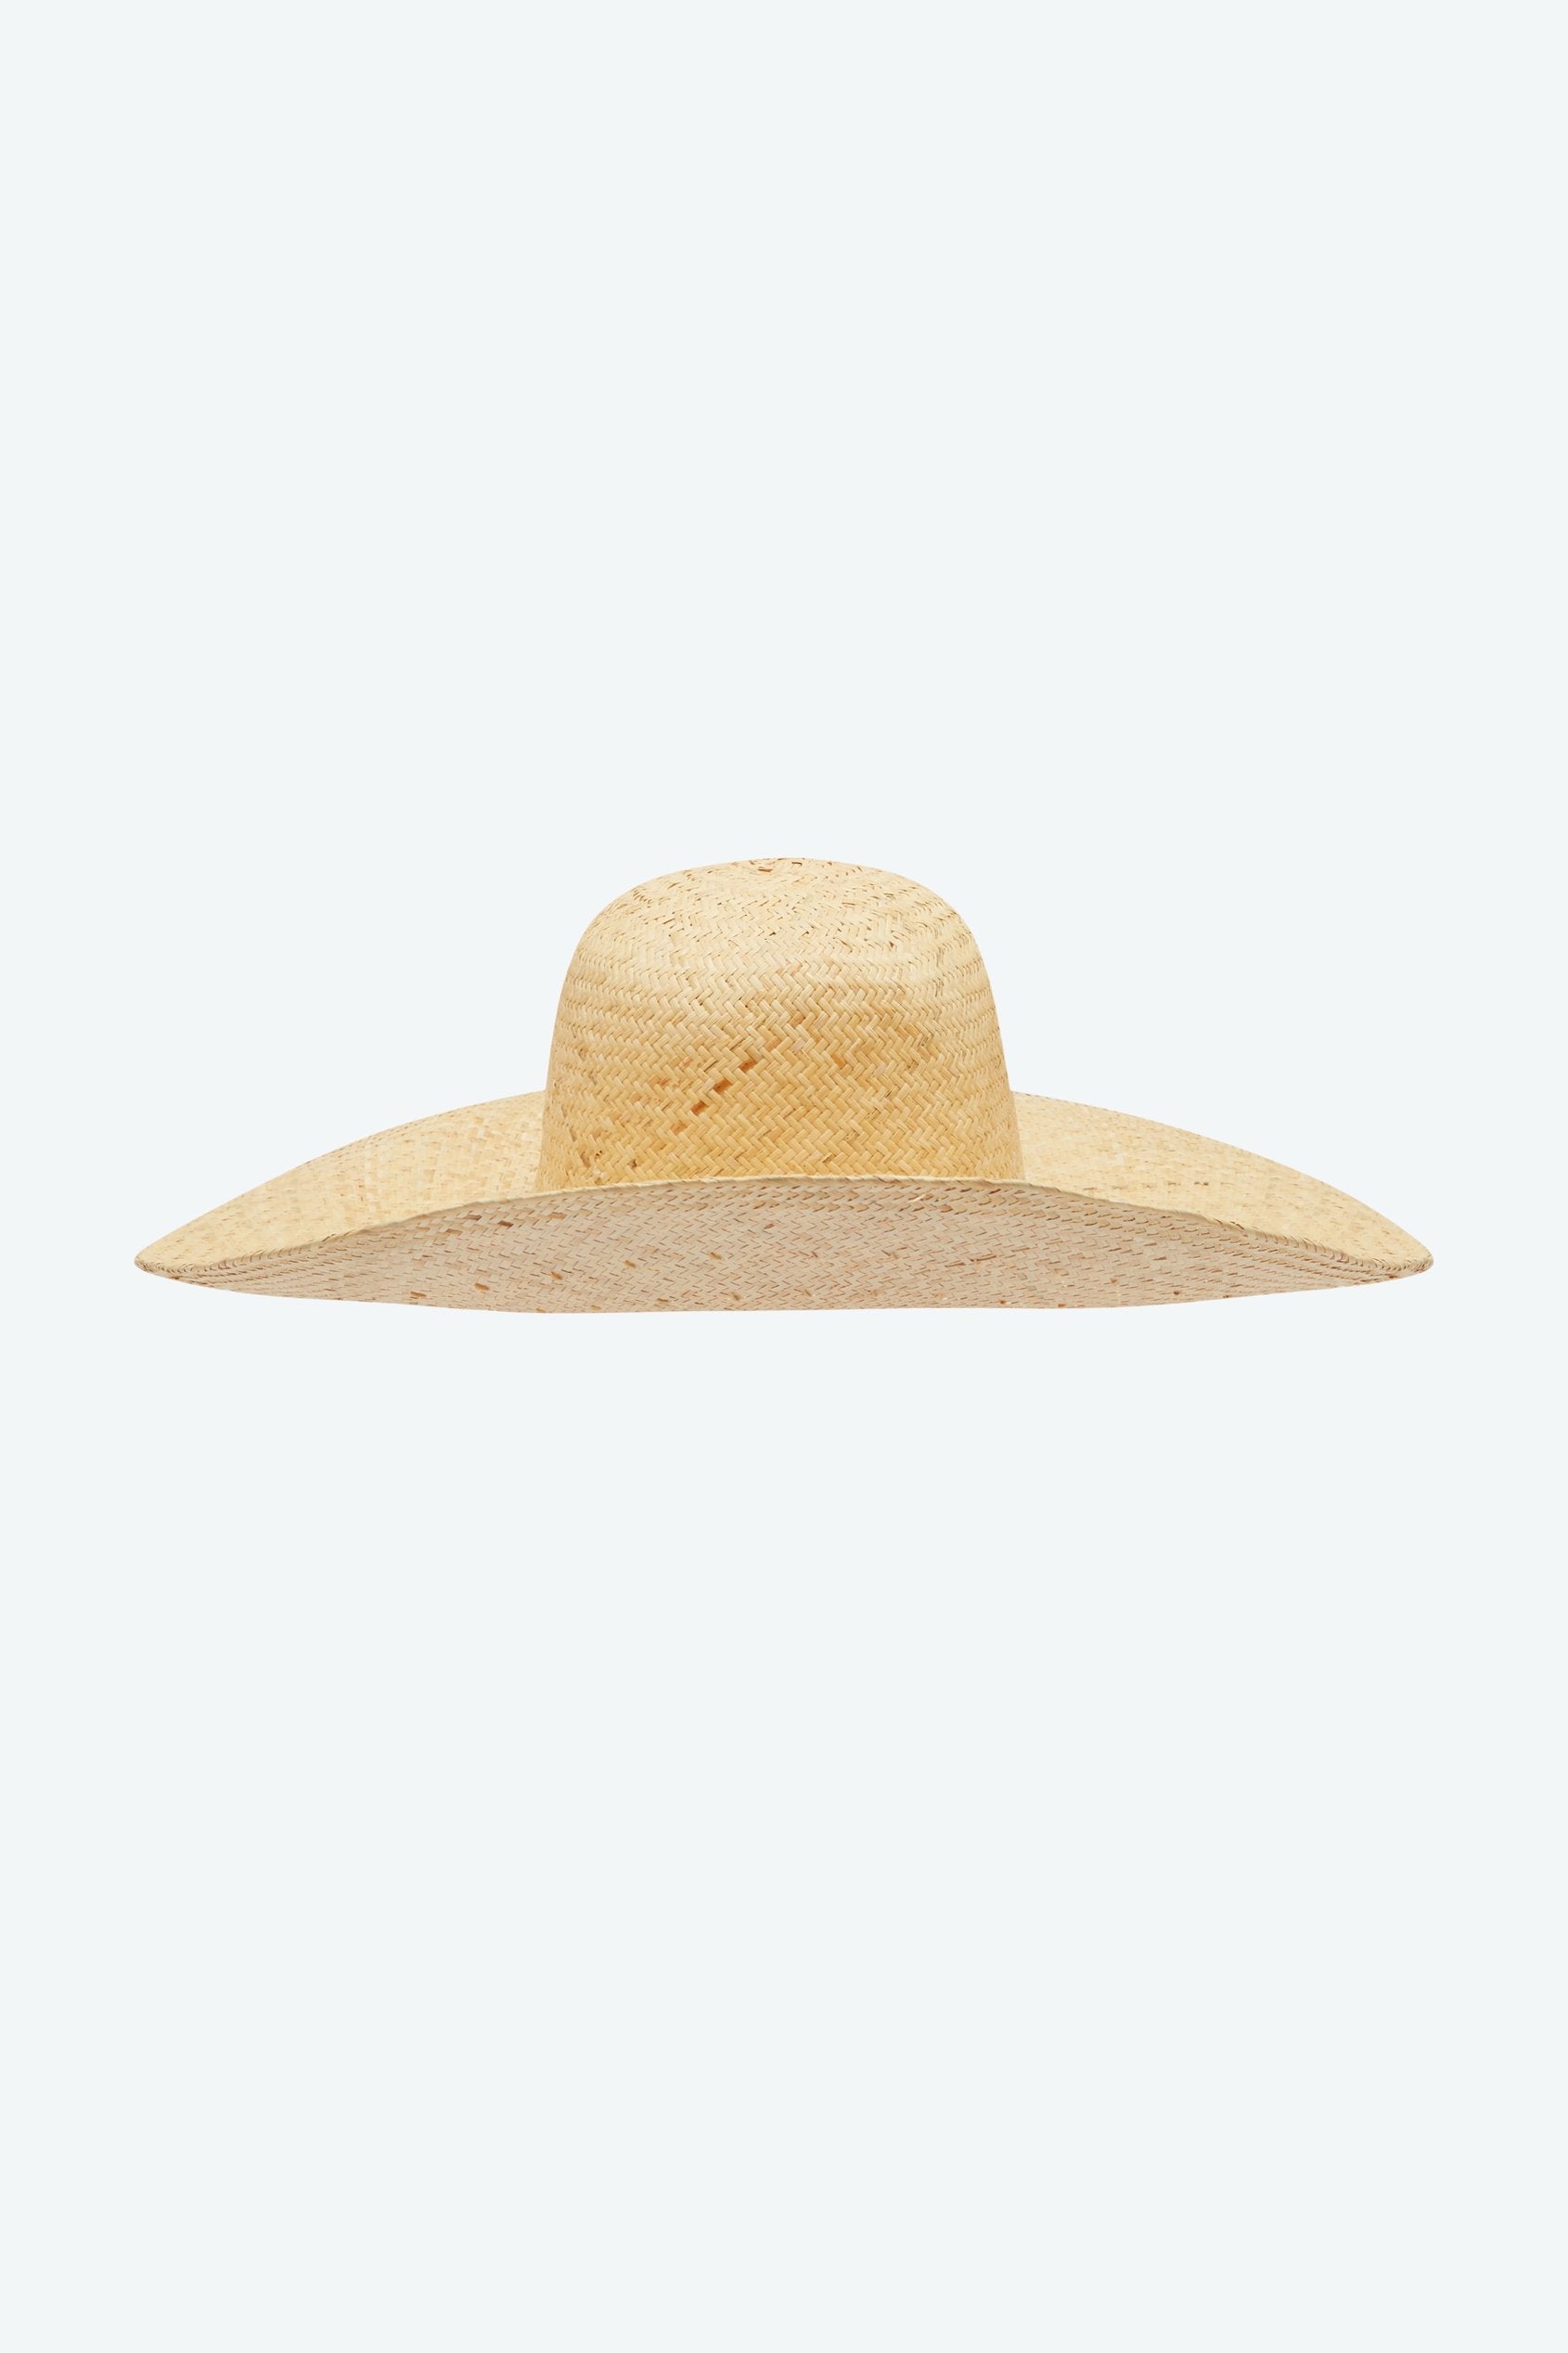 Garden Hat